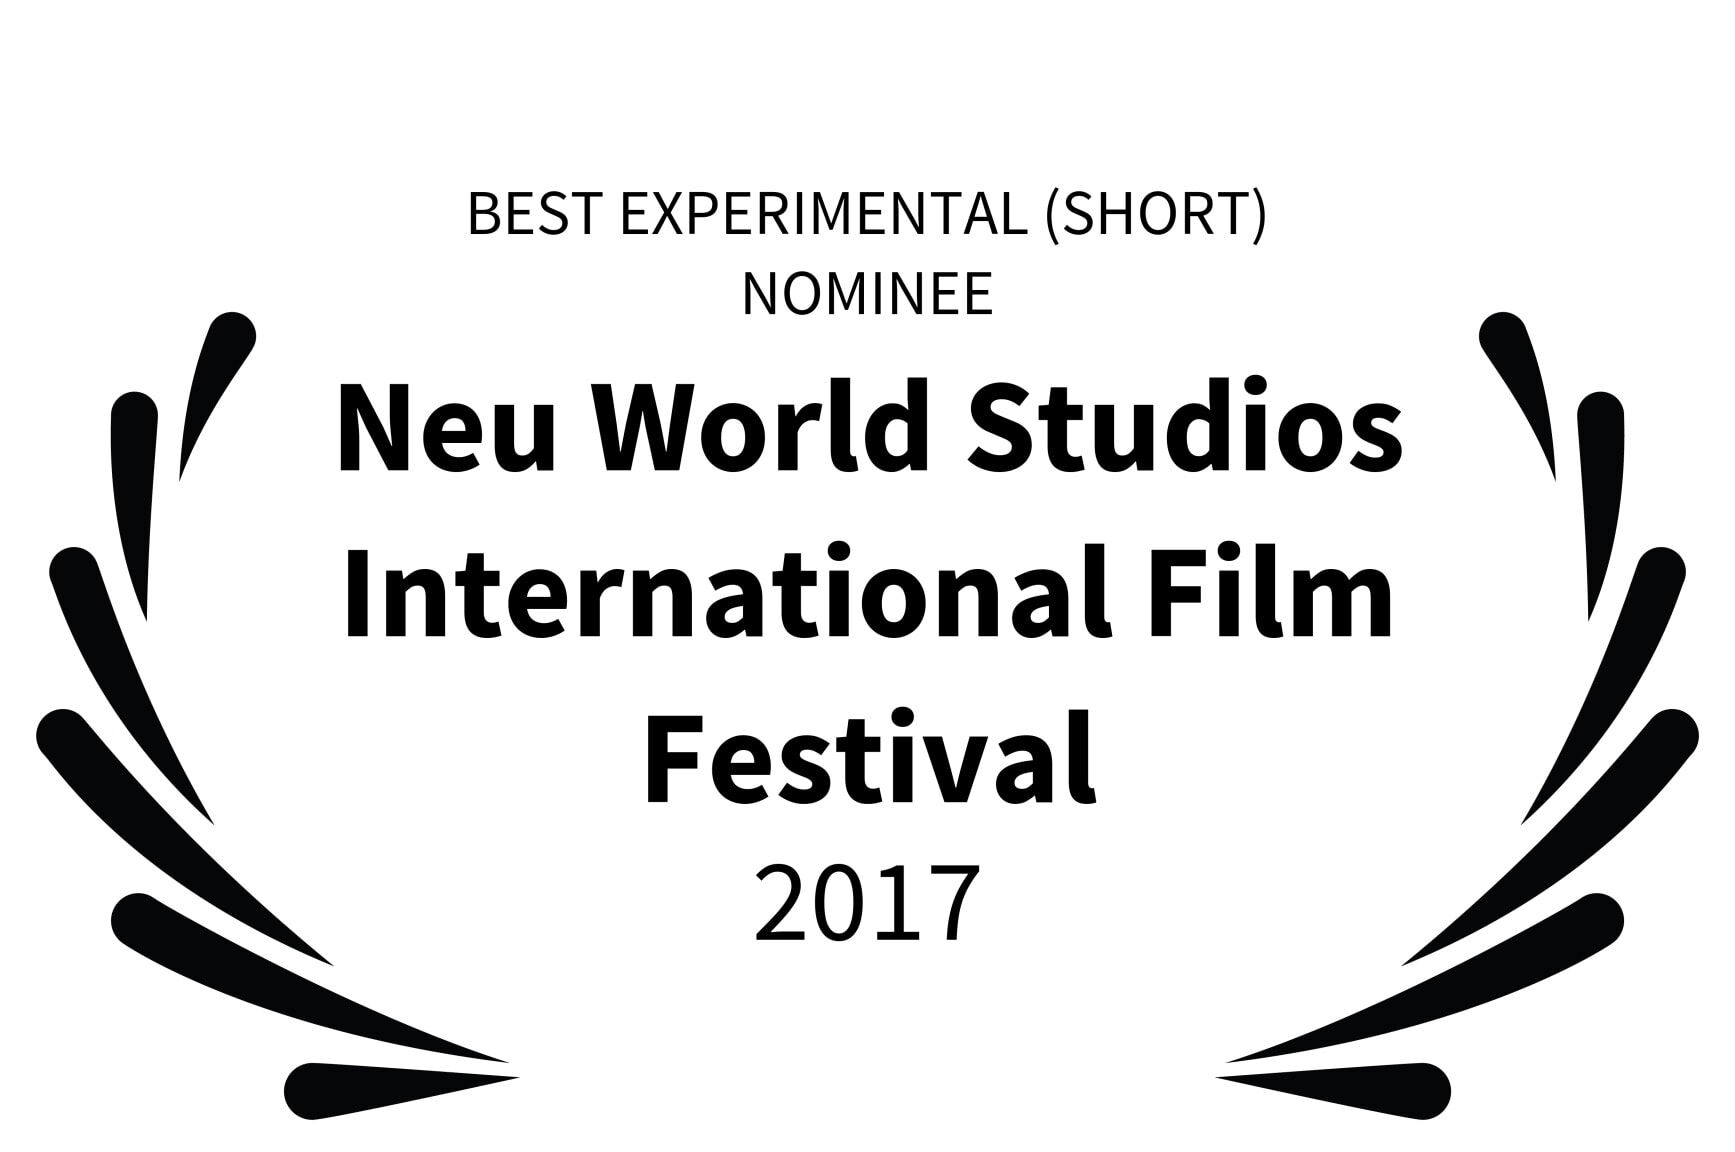 BEST EXPERIMENTAL SHORT NOMINEE - Neu World Studios International Film Festival - 2017